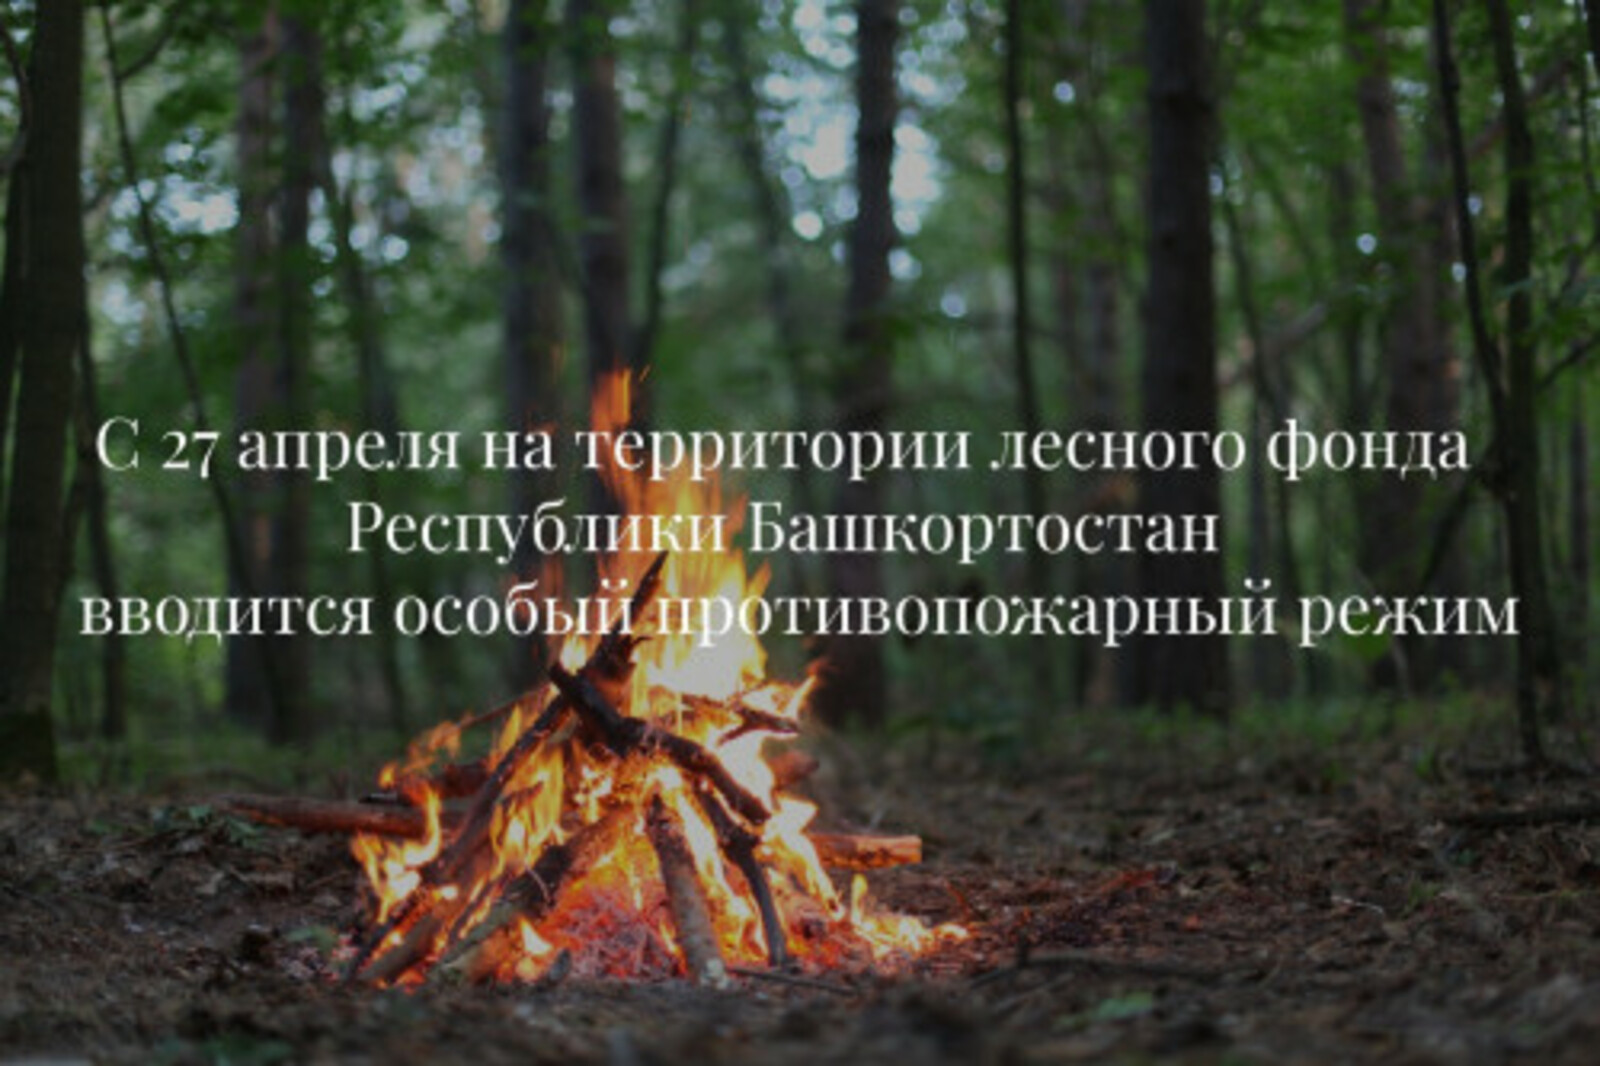 С 27 апреля в лесах Республики Башкортостан будет действовать специальный режим для предотвращения пожаров.